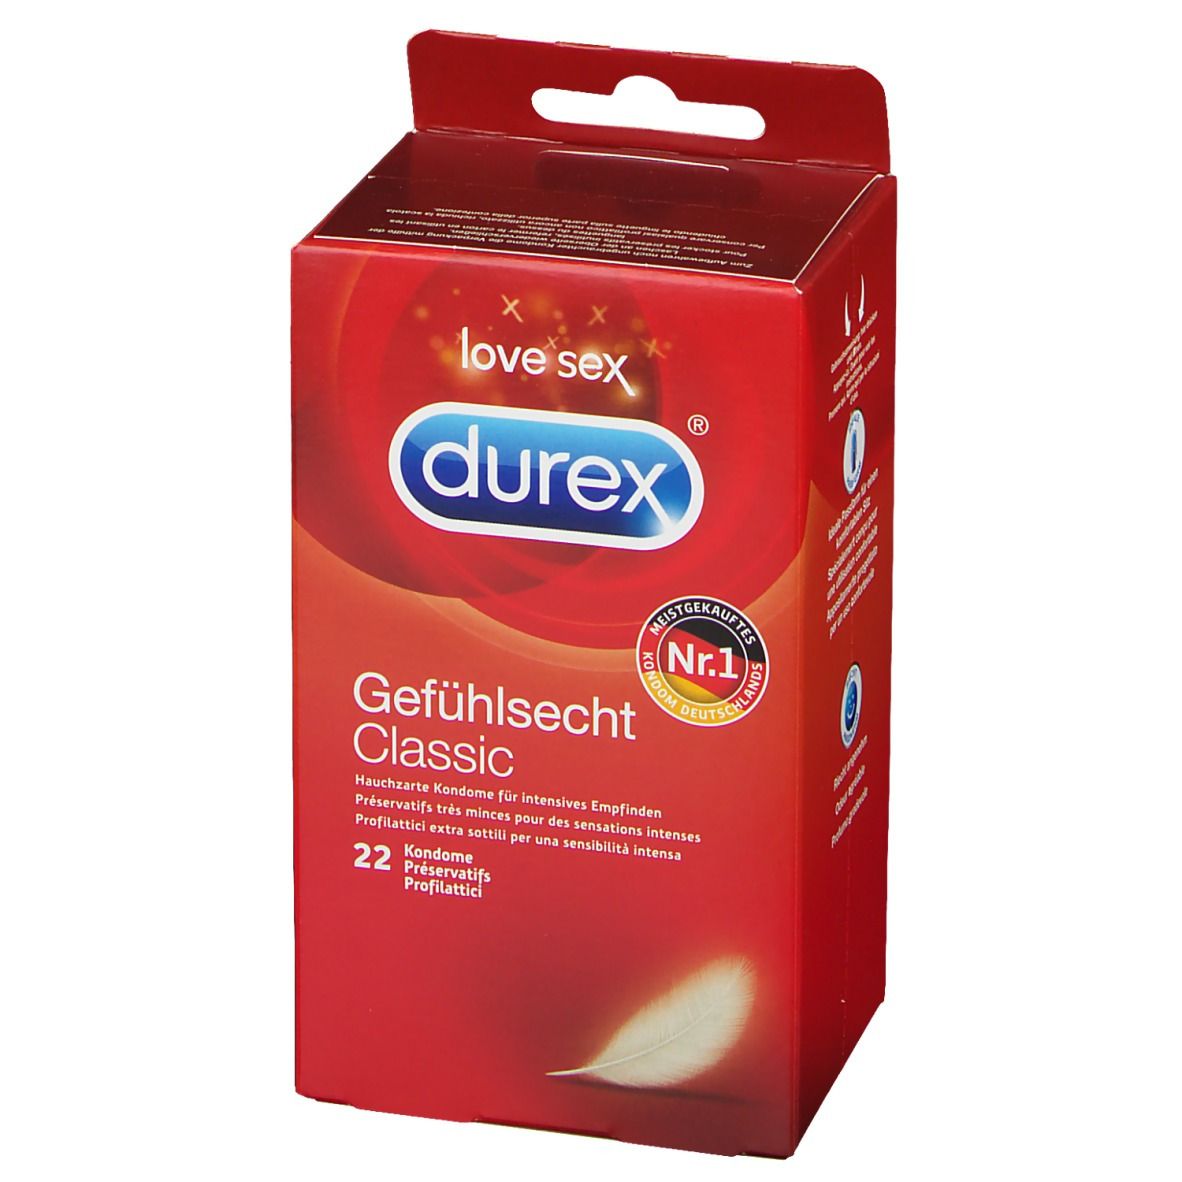 DUREX® Gefühlsecht hauchzarte Kondome für intensives Empfinden